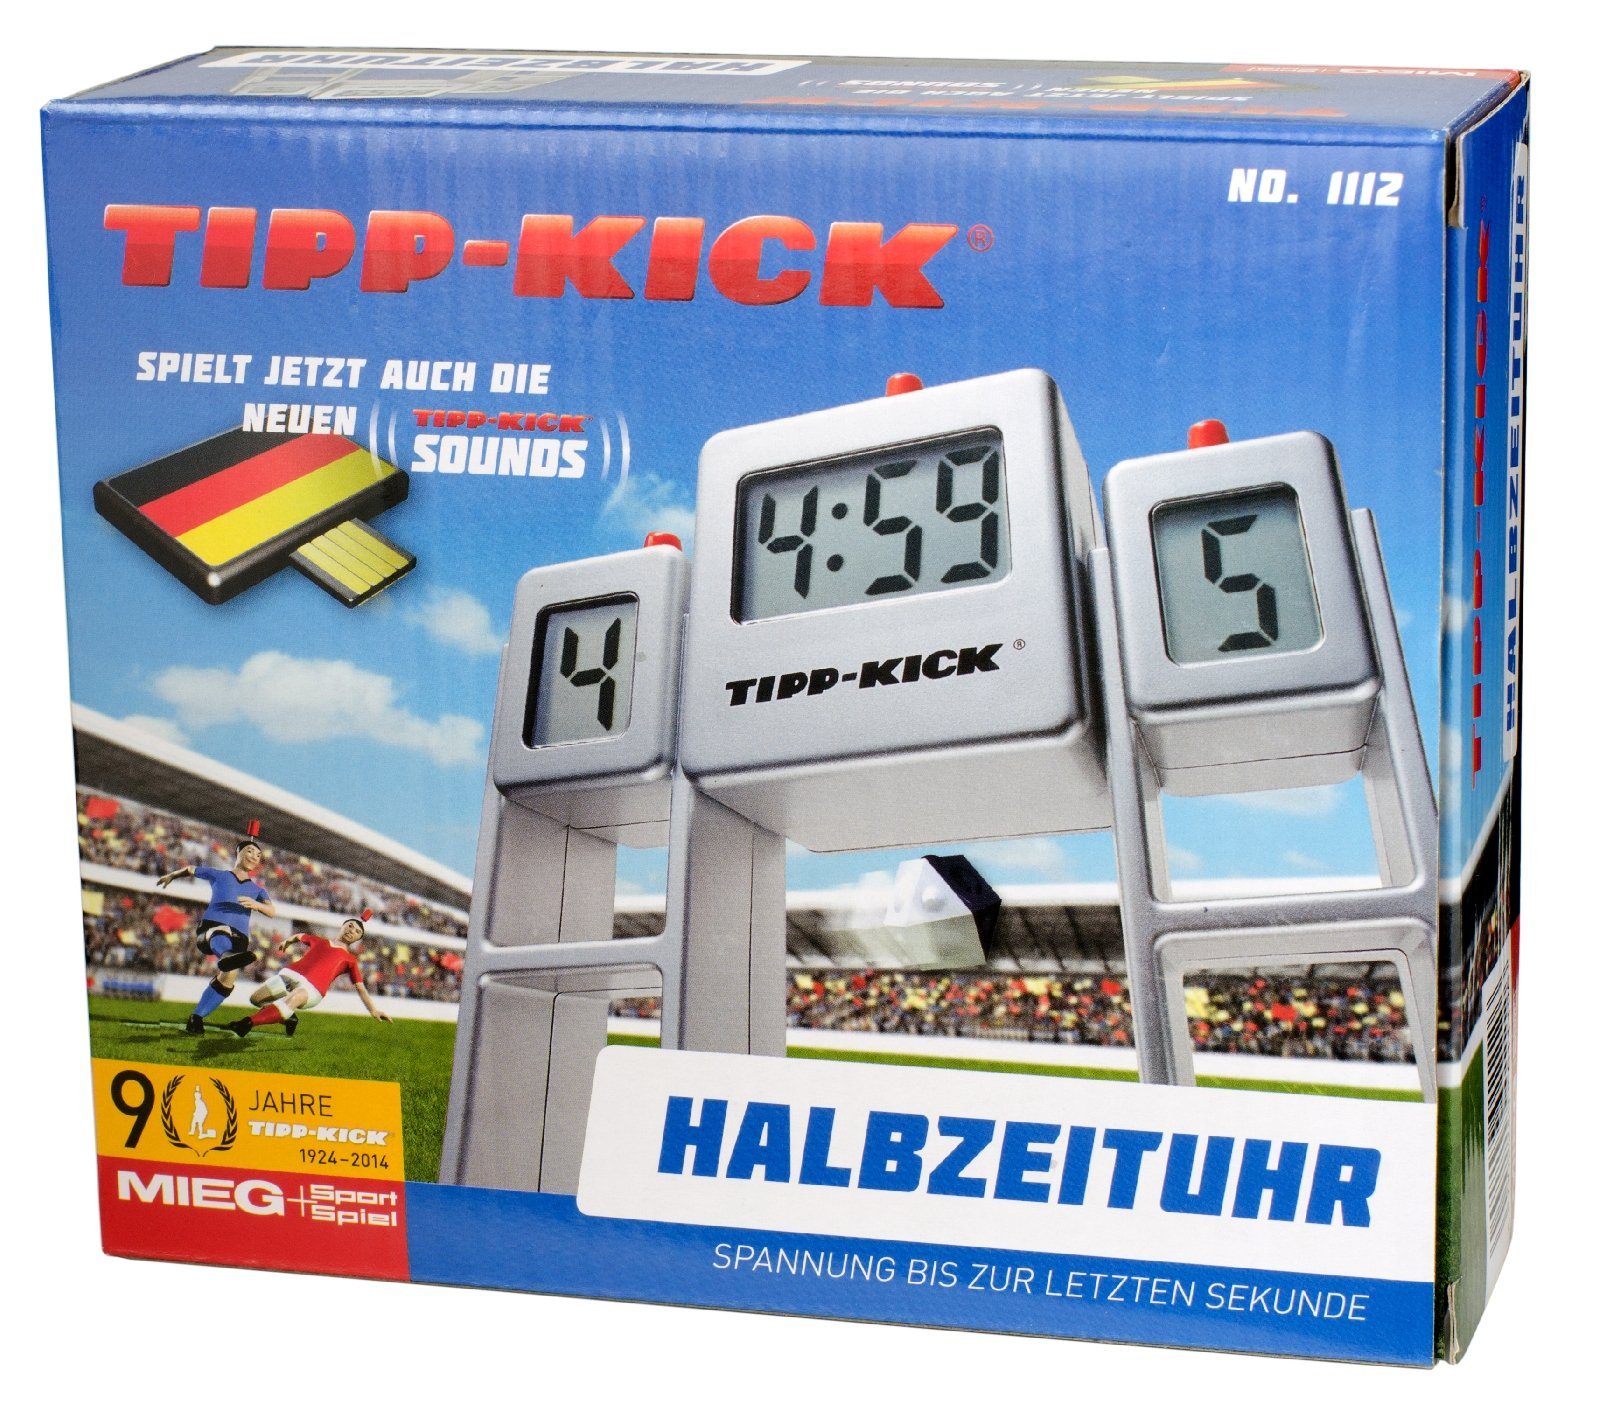 Tip Stoppuhr Kick Tipp-Kick Sound Spiel Zeitanzeige Halbzeituhr Tischfußballspiel Uhr Match